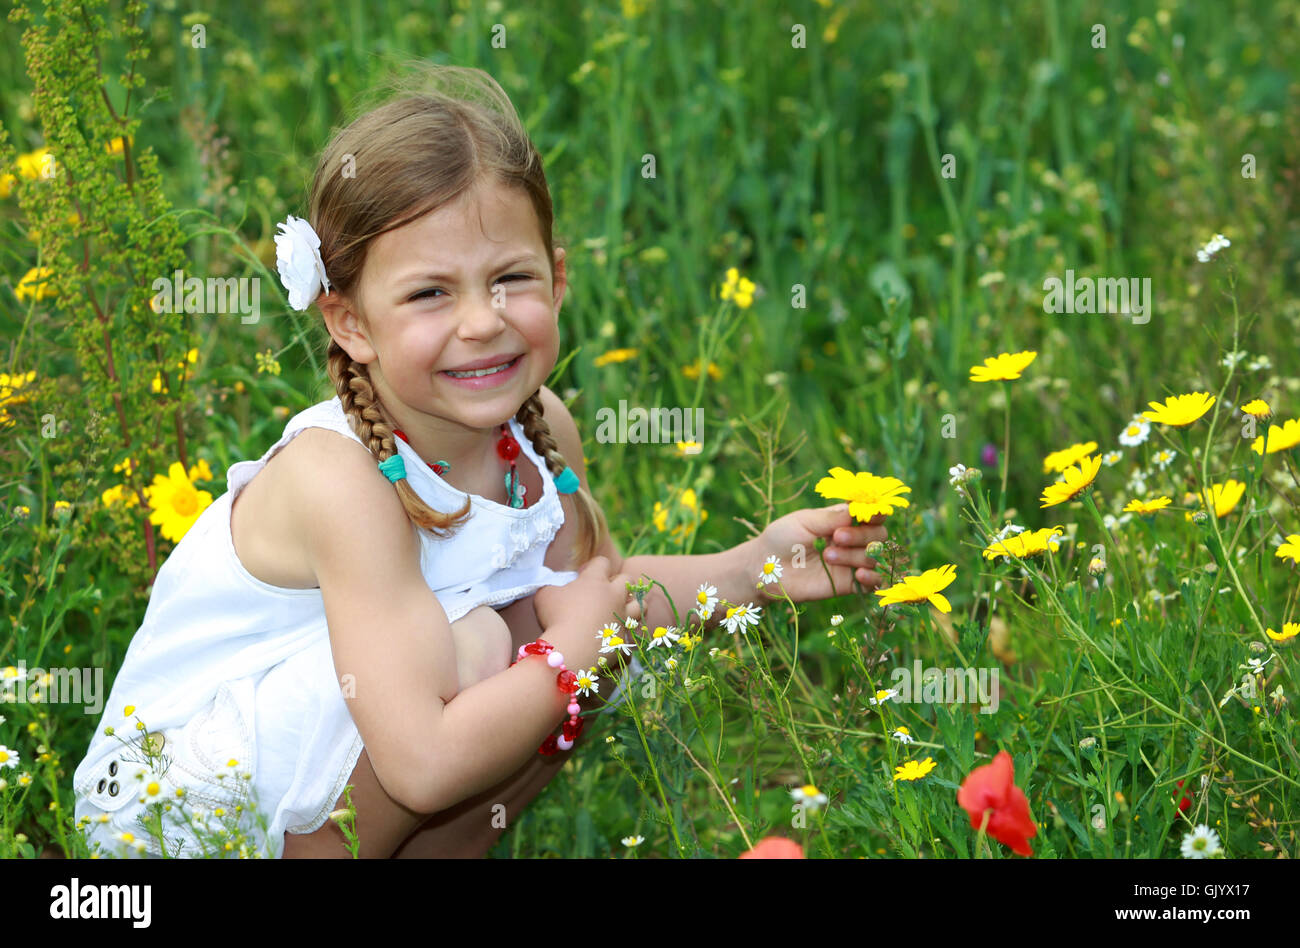 field daisy kid Stock Photo